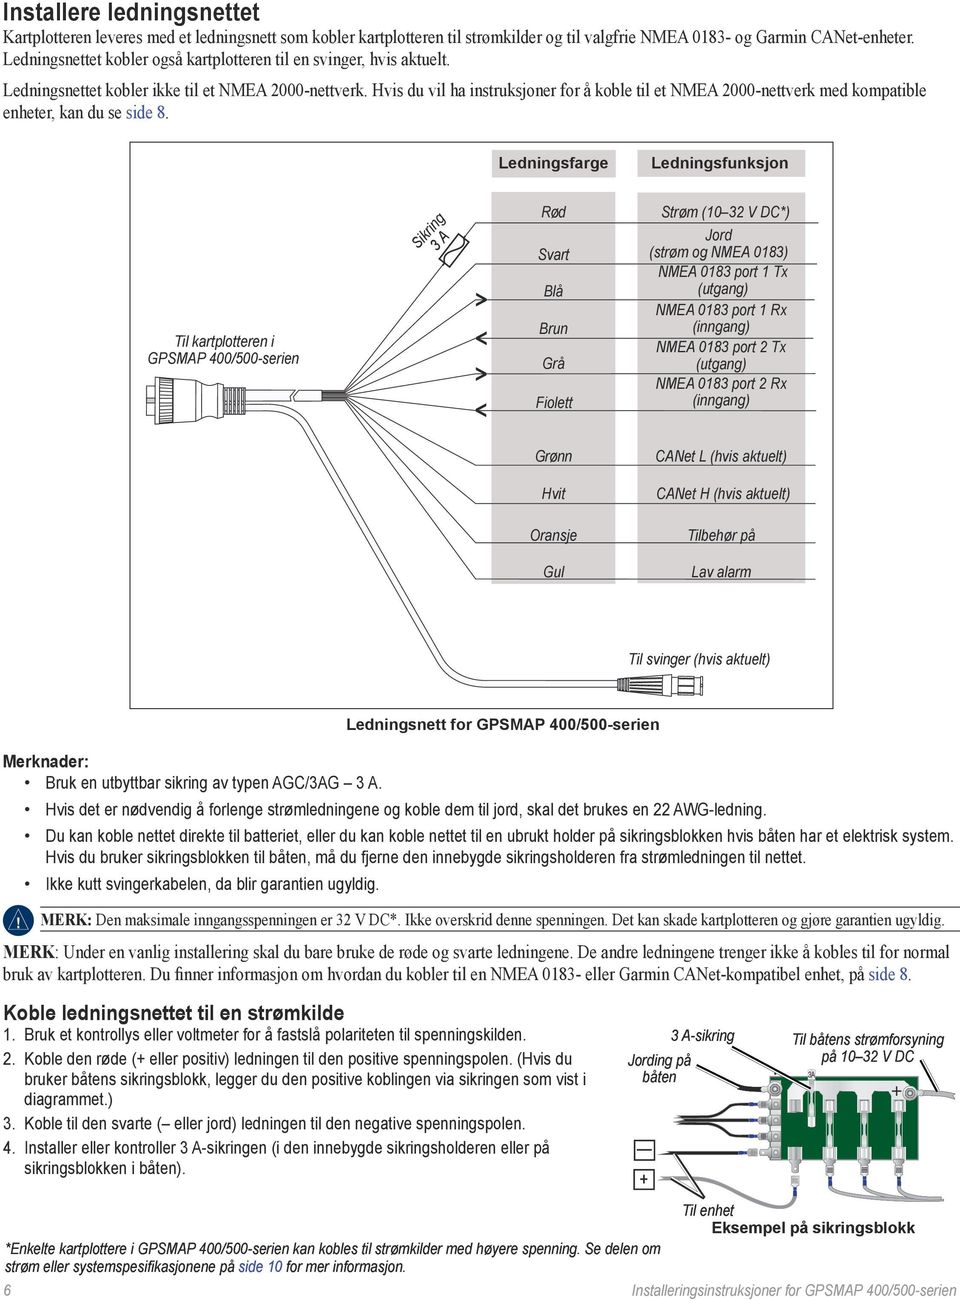 Hvis du vil ha instruksjoner for å koble til et NMEA 2000-nettverk med kompatible enheter, kan du se side 8.